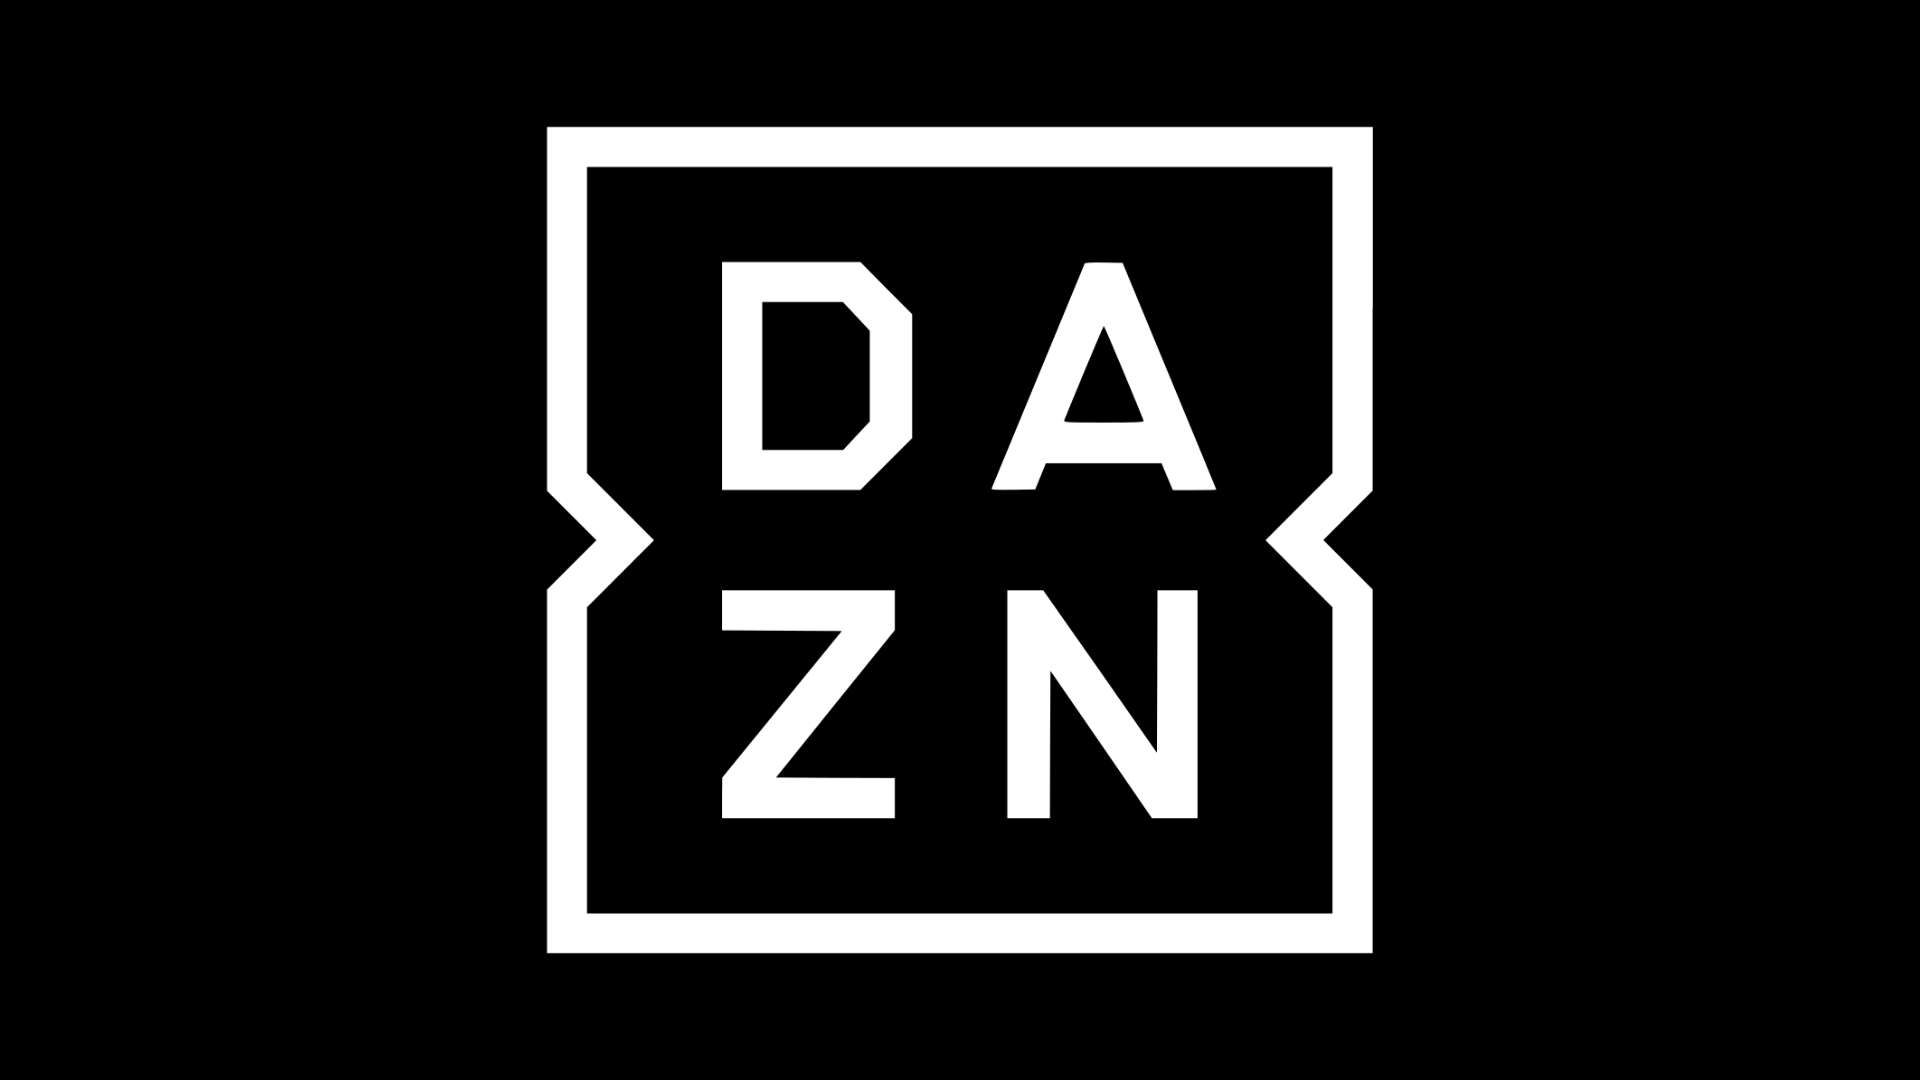 DAZN dark logo